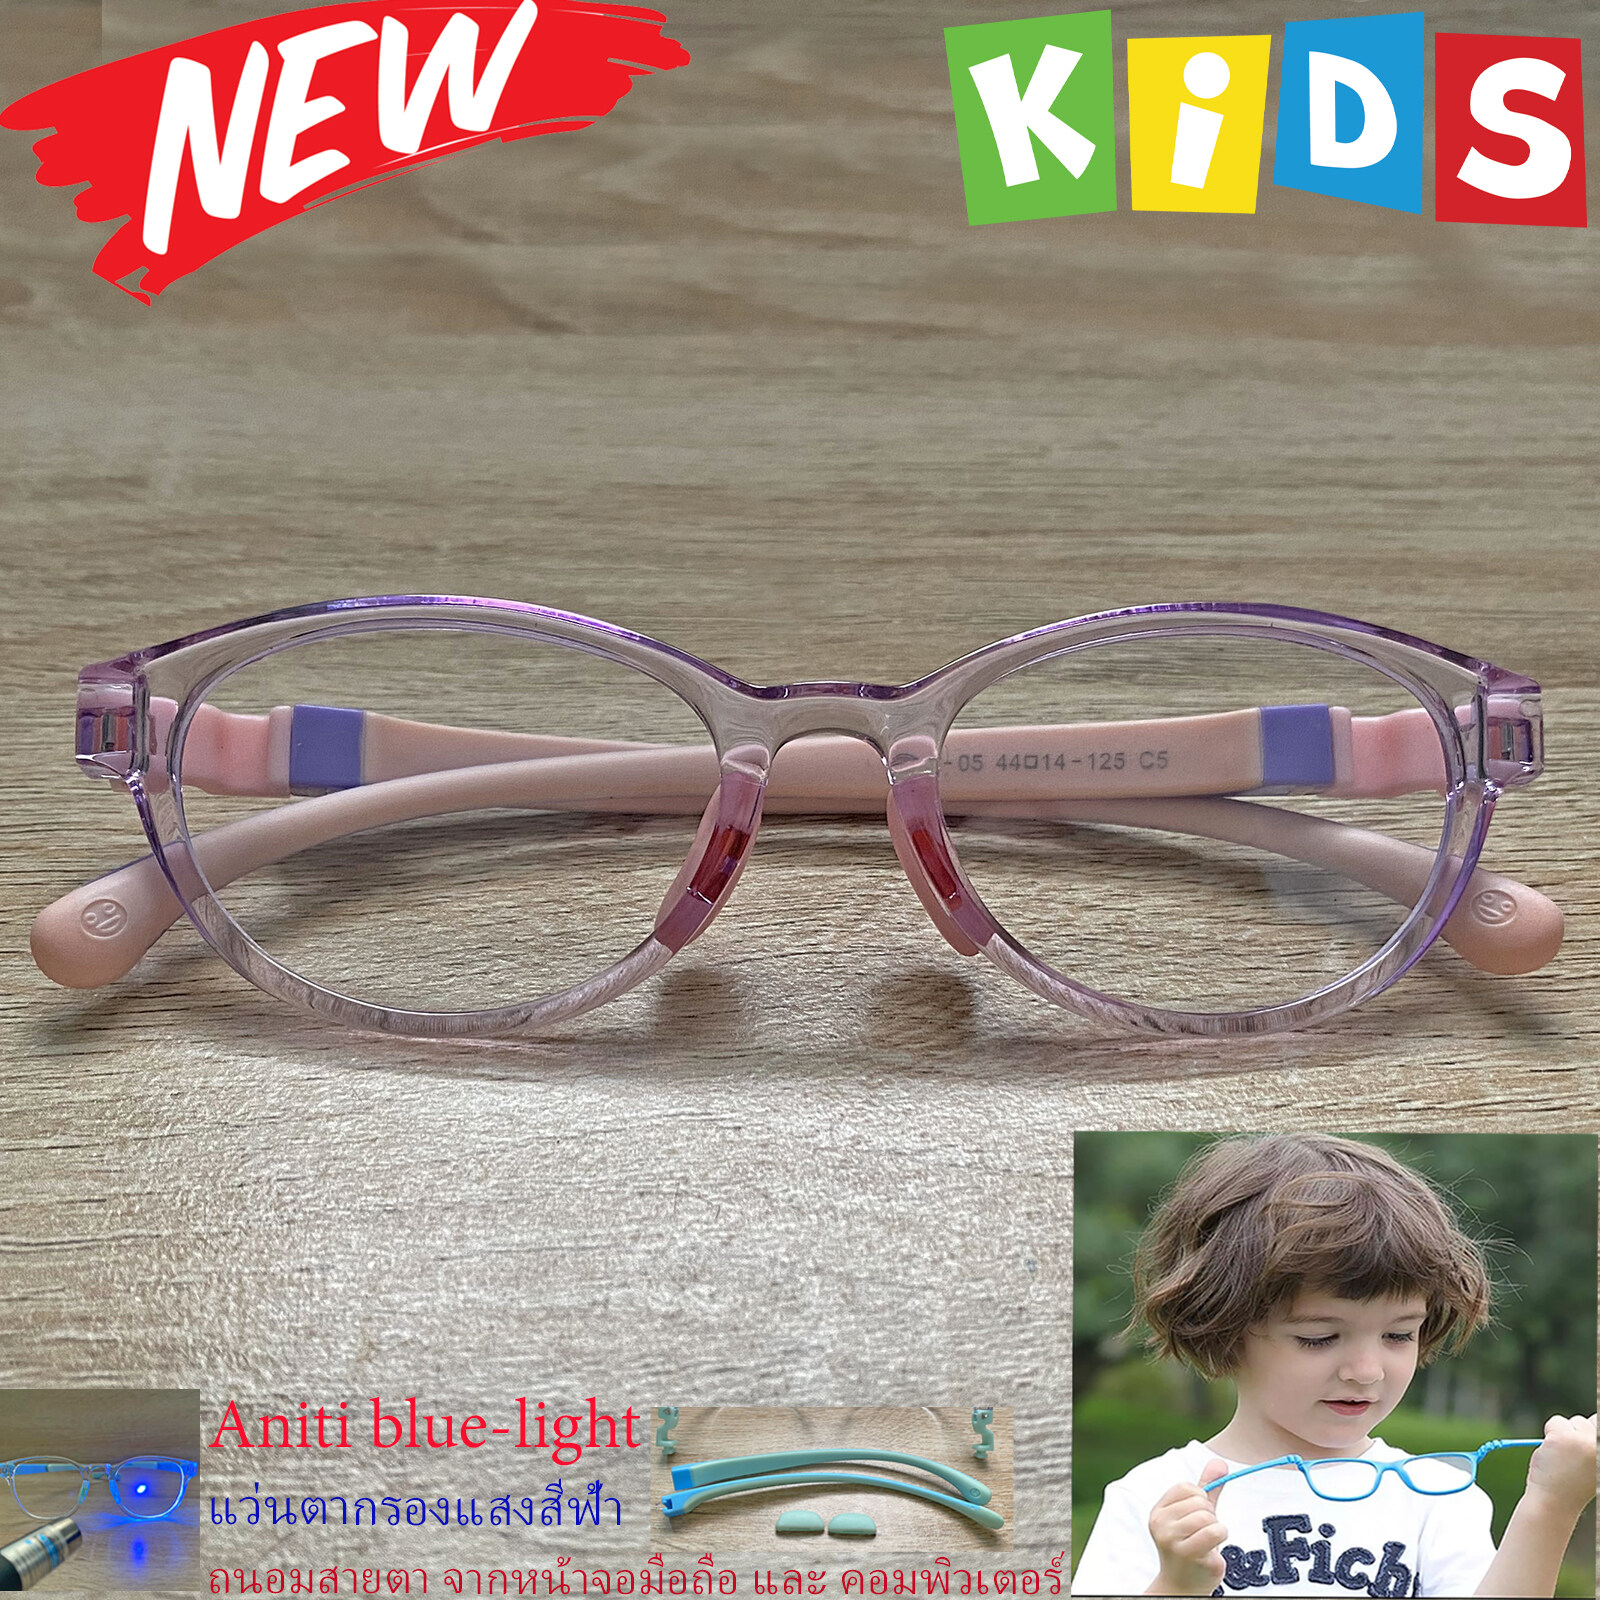 แว่นตาเด็ก กรองแสงสีฟ้า blue block แว่นเด็ก บลูบล็อค รุ่น 05 สีม่วง ขาข้อต่อยืดหยุ่น ถอดขาเปลี่ยนได้ วัสดุTR90 เหมาะสำหรับเลนส์สายตา